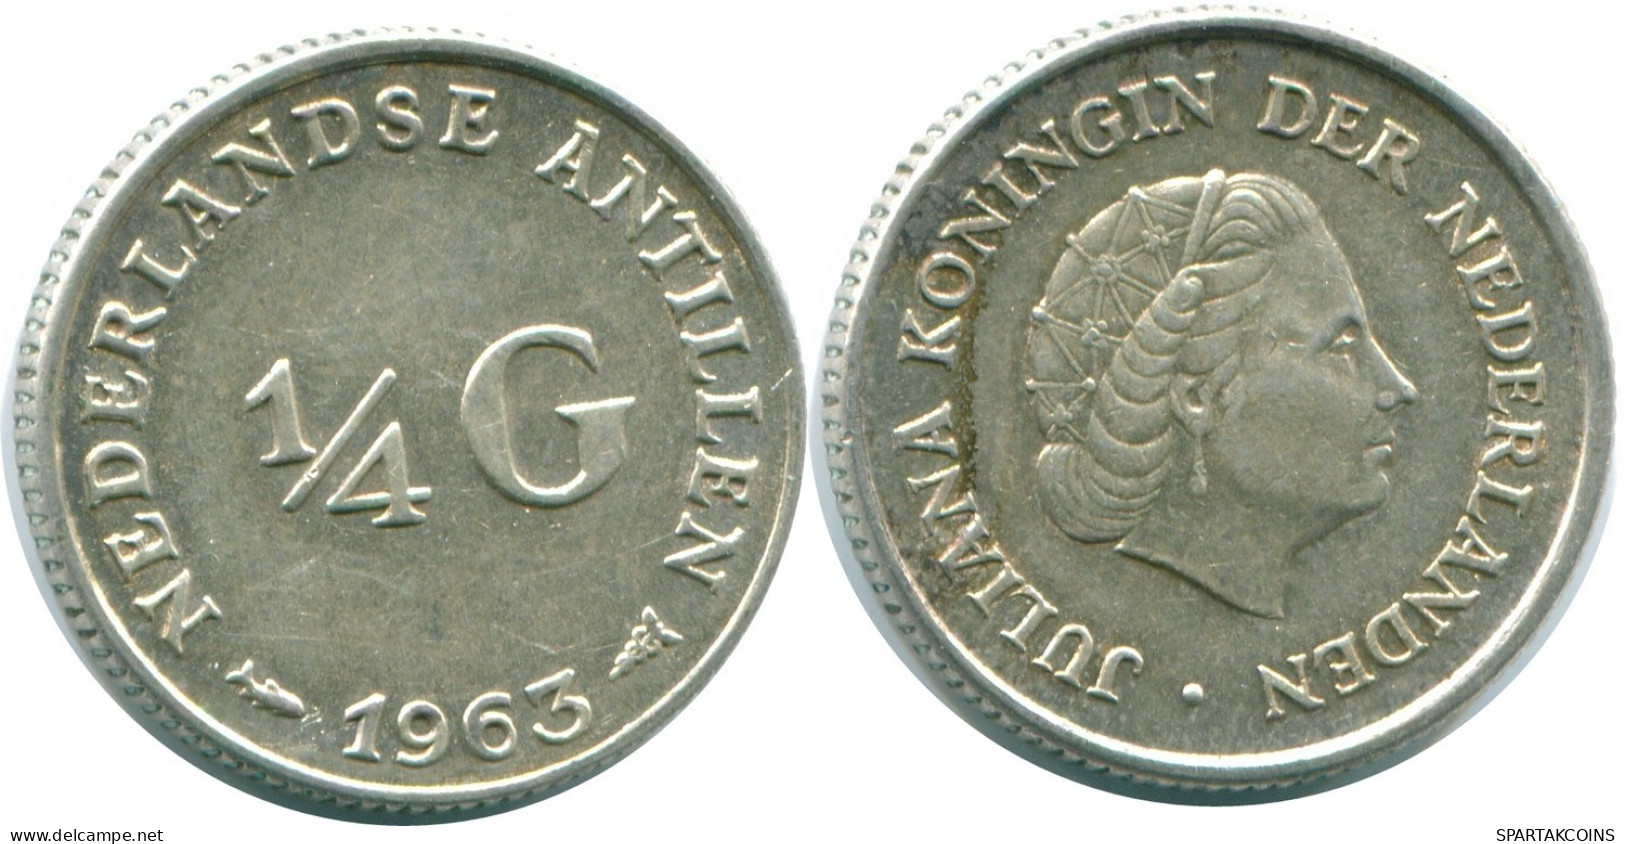 1/4 GULDEN 1963 NIEDERLÄNDISCHE ANTILLEN SILBER Koloniale Münze #NL11243.4.D.A - Niederländische Antillen